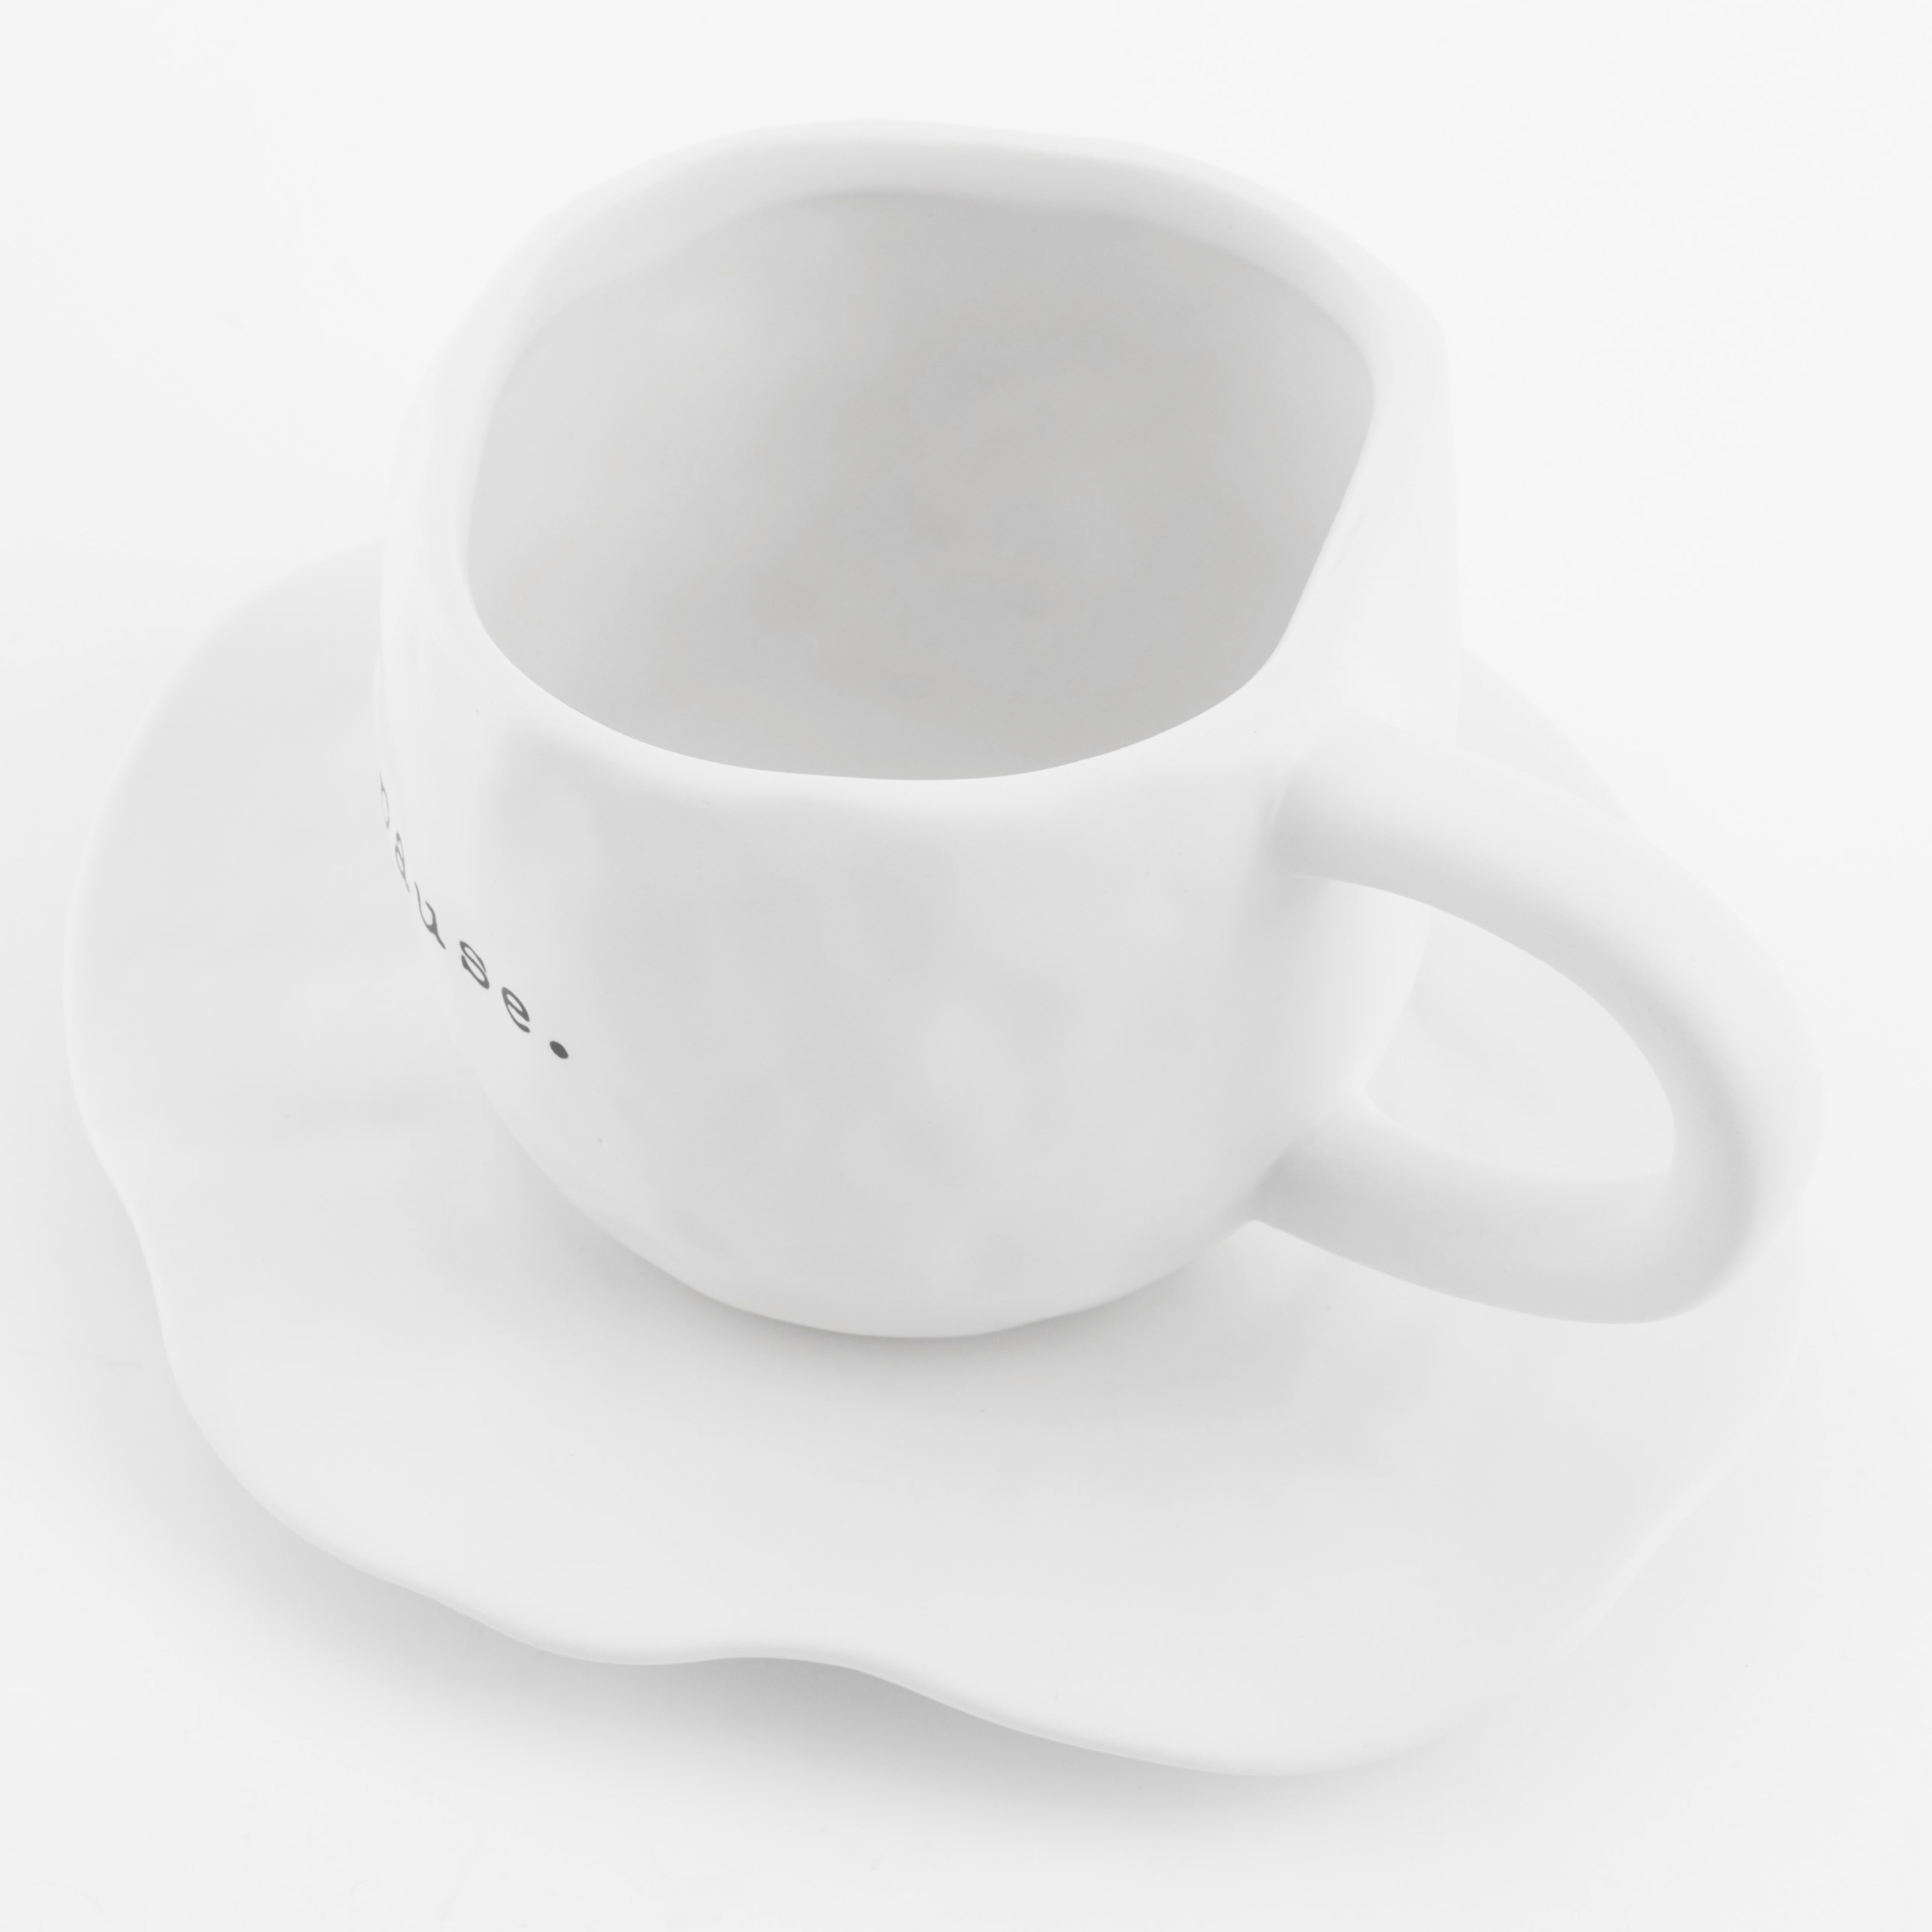 Пара чайная, 1 перс, 2 пр, 420 мл, керамика, белая, Pause, Crumple font изображение № 3